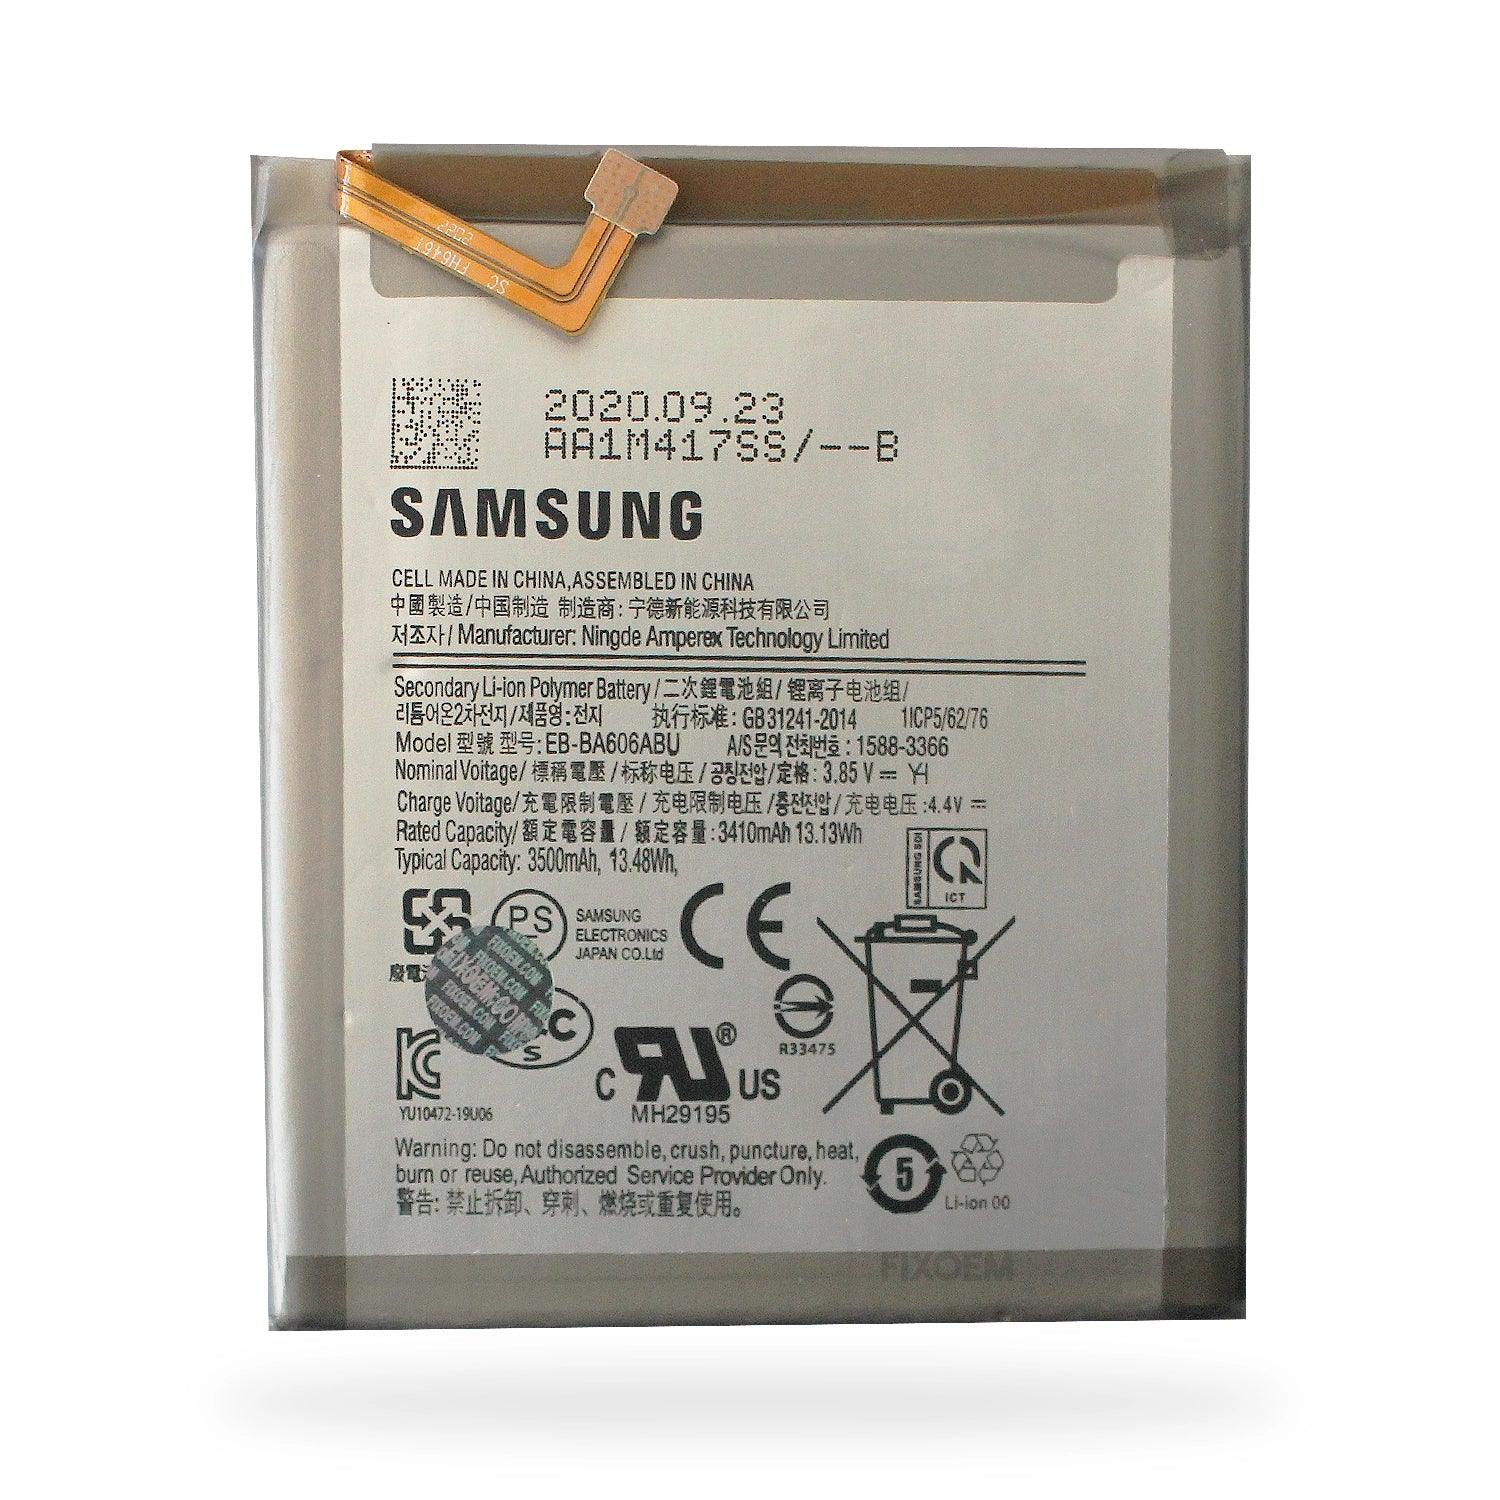 Bateria Samsung M40 / A60 Sm-M405F Sm-A606 Eb-A606Abu. a solo $ 30.00 Refaccion y puestos celulares, refurbish y microelectronica.- FixOEM